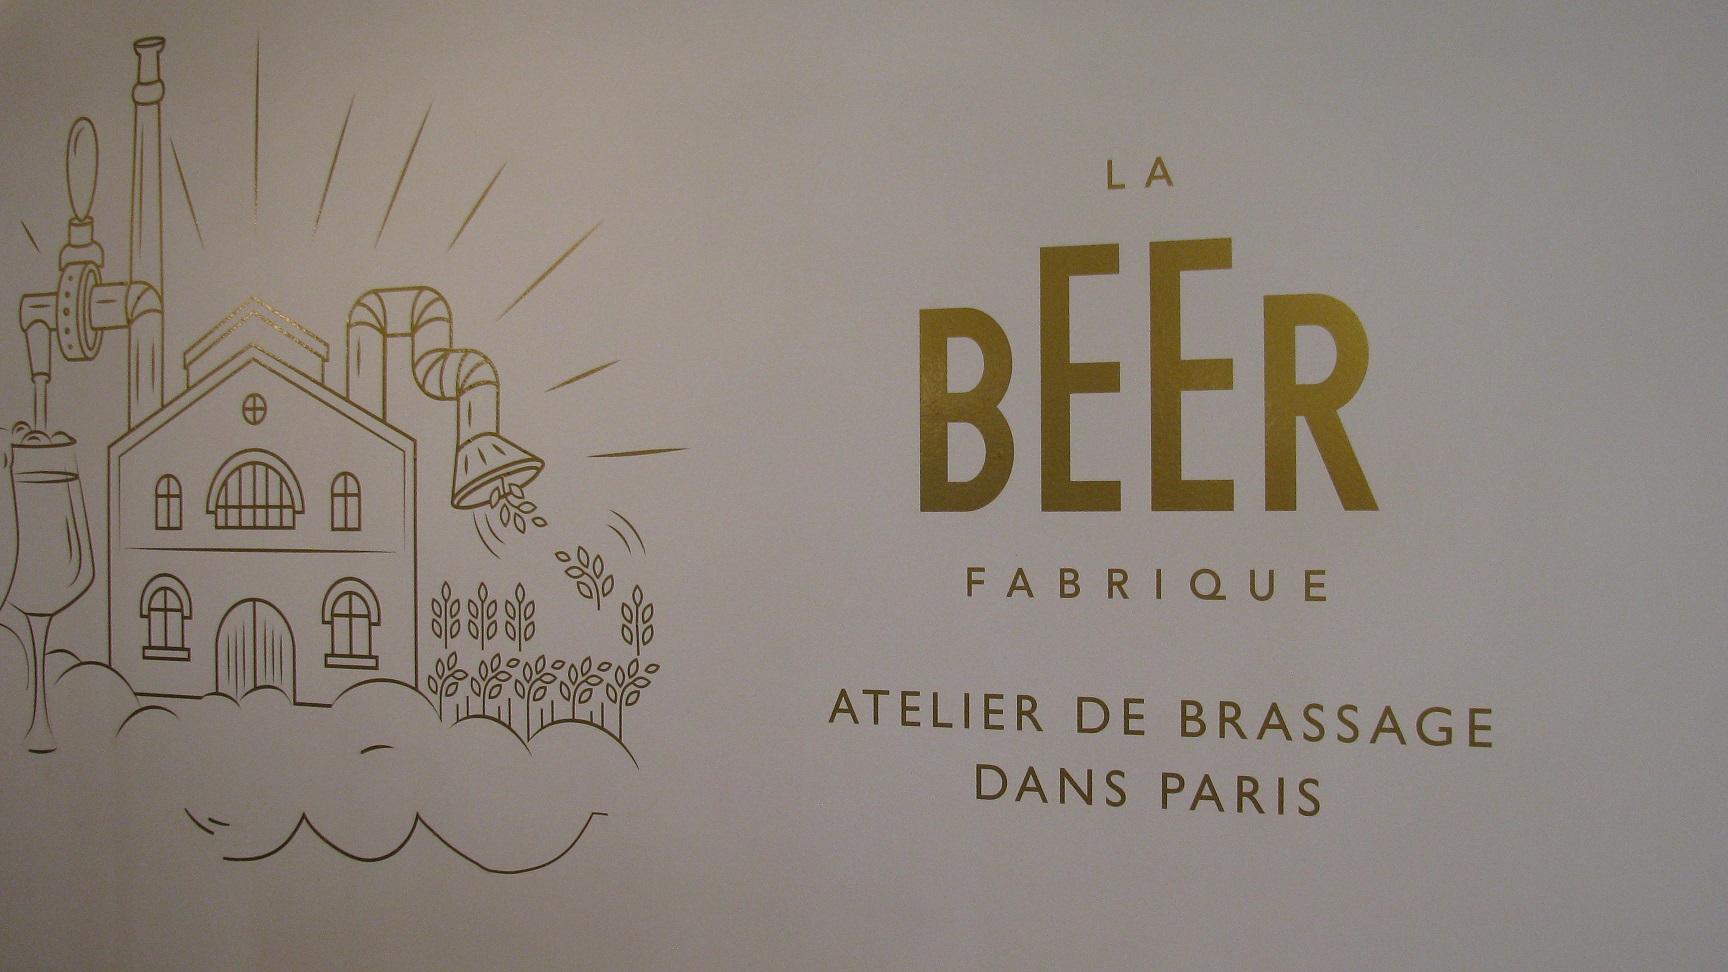 La beer fabrique Paris 11 - La fille aux couettes 6b